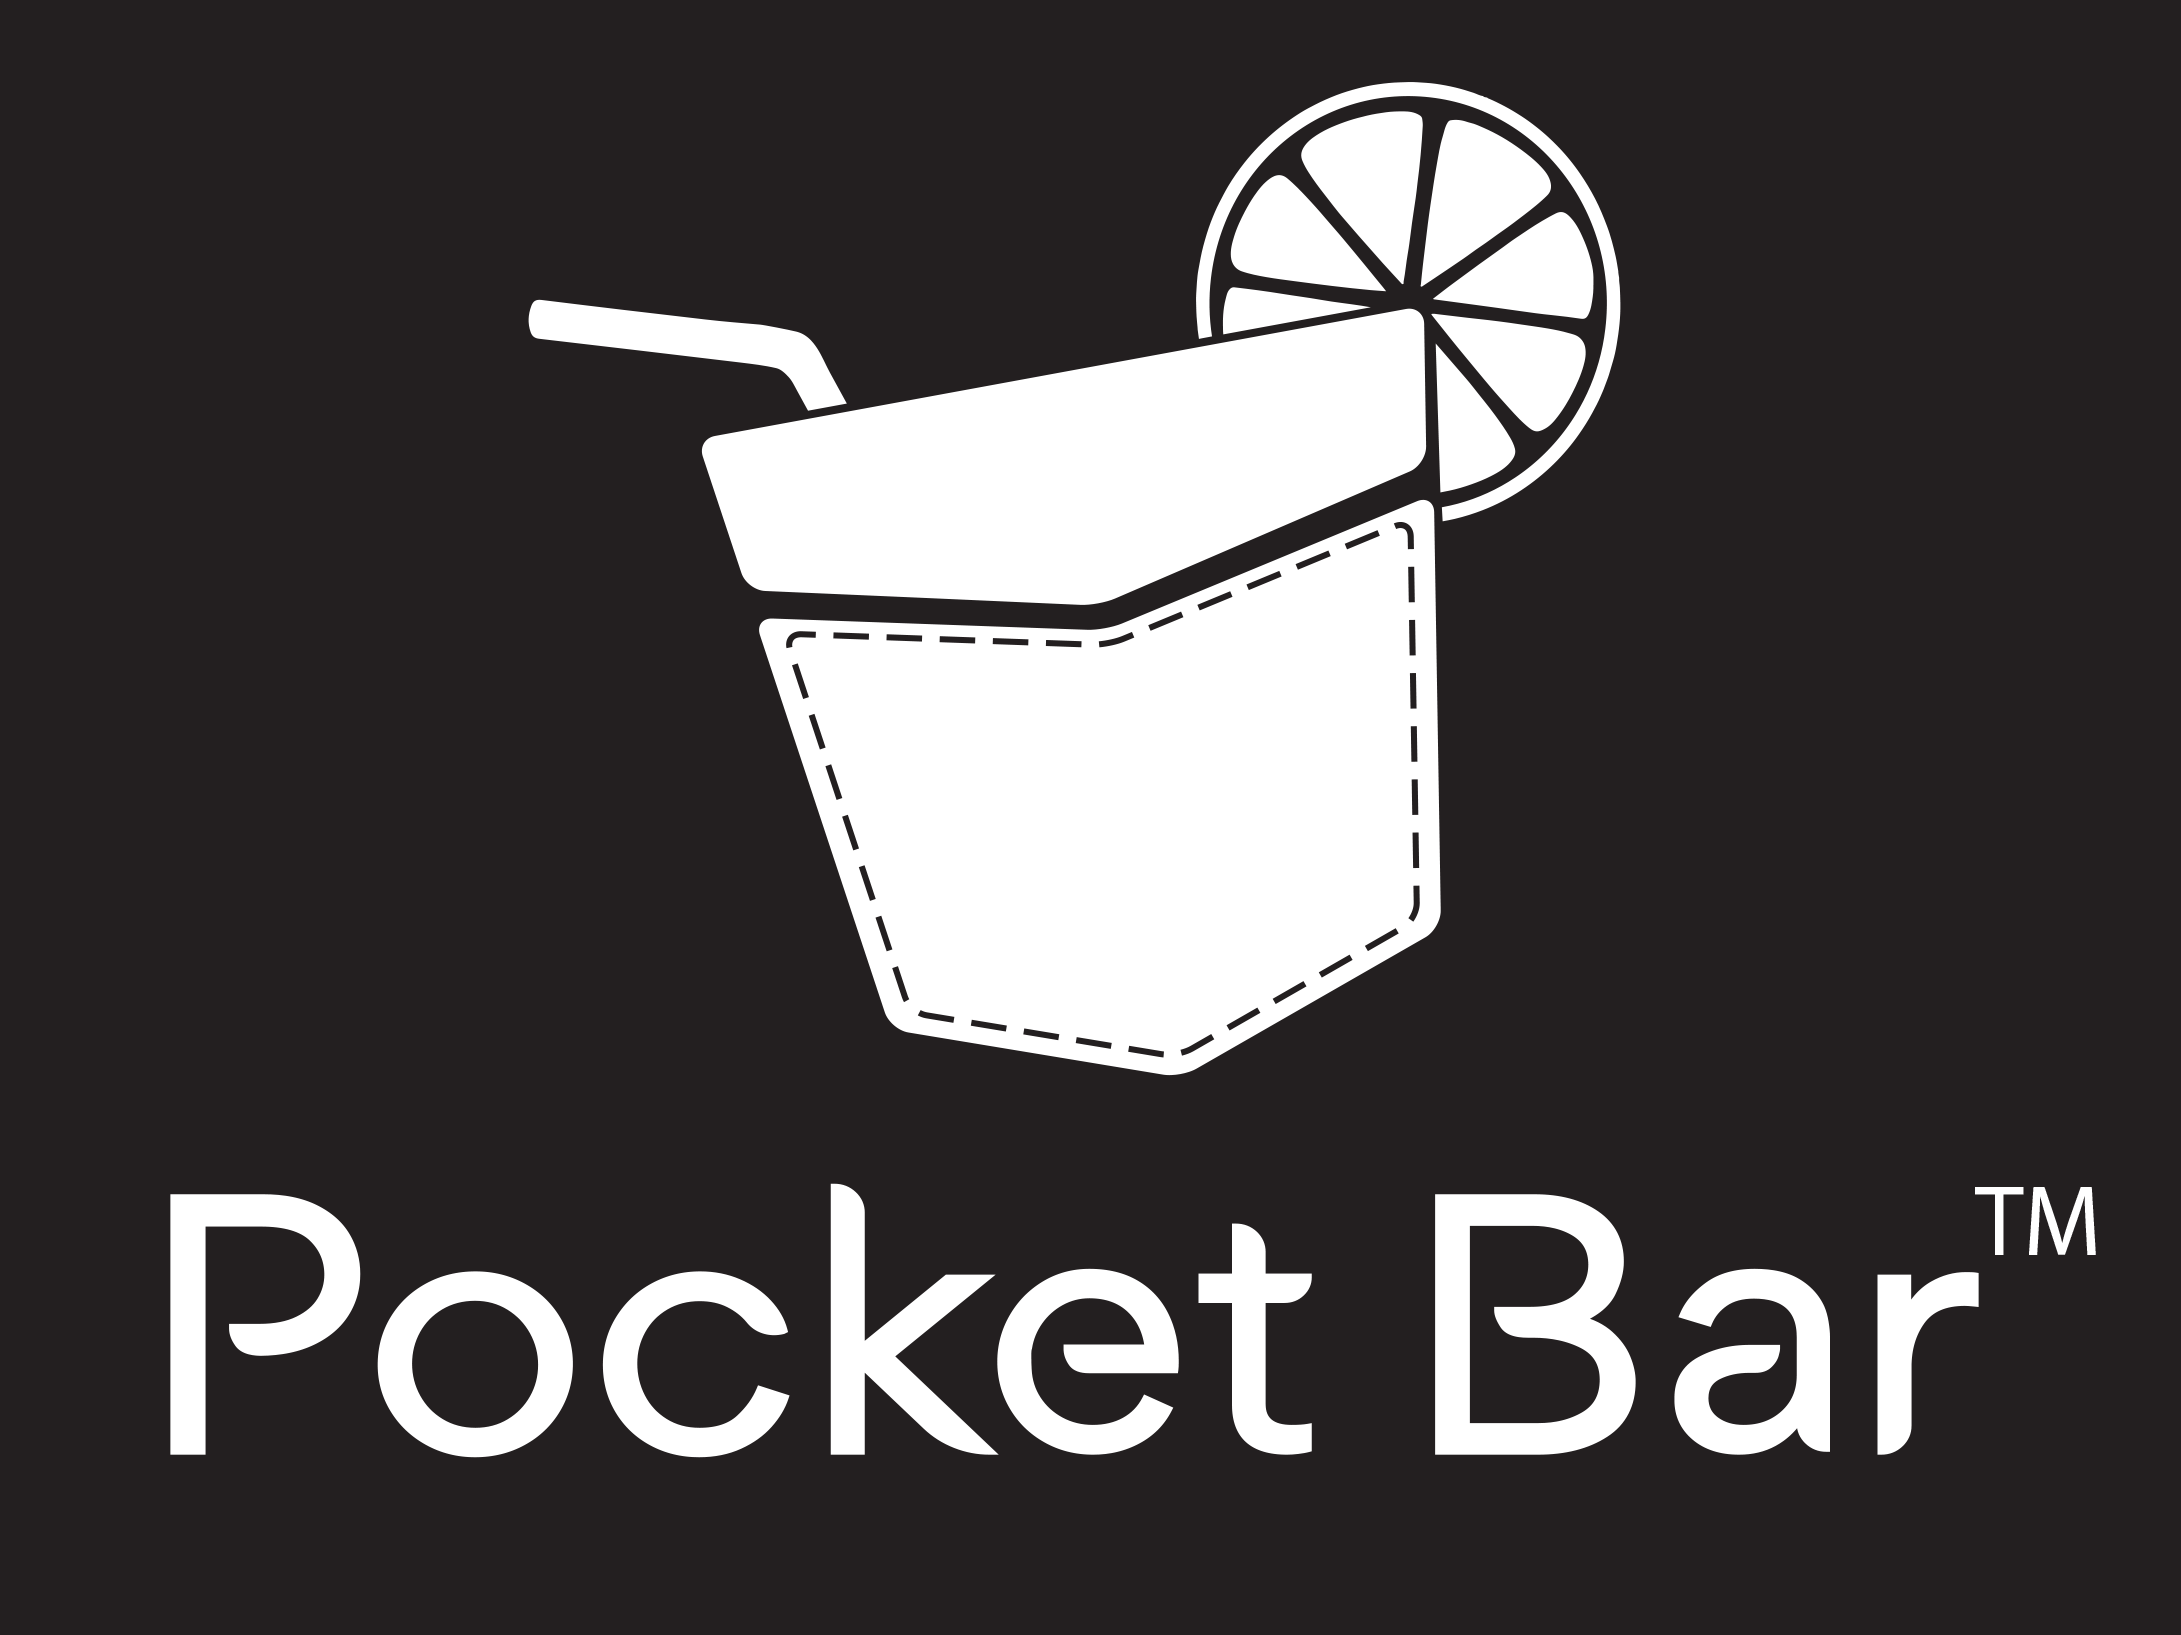 Pocket Bar logo